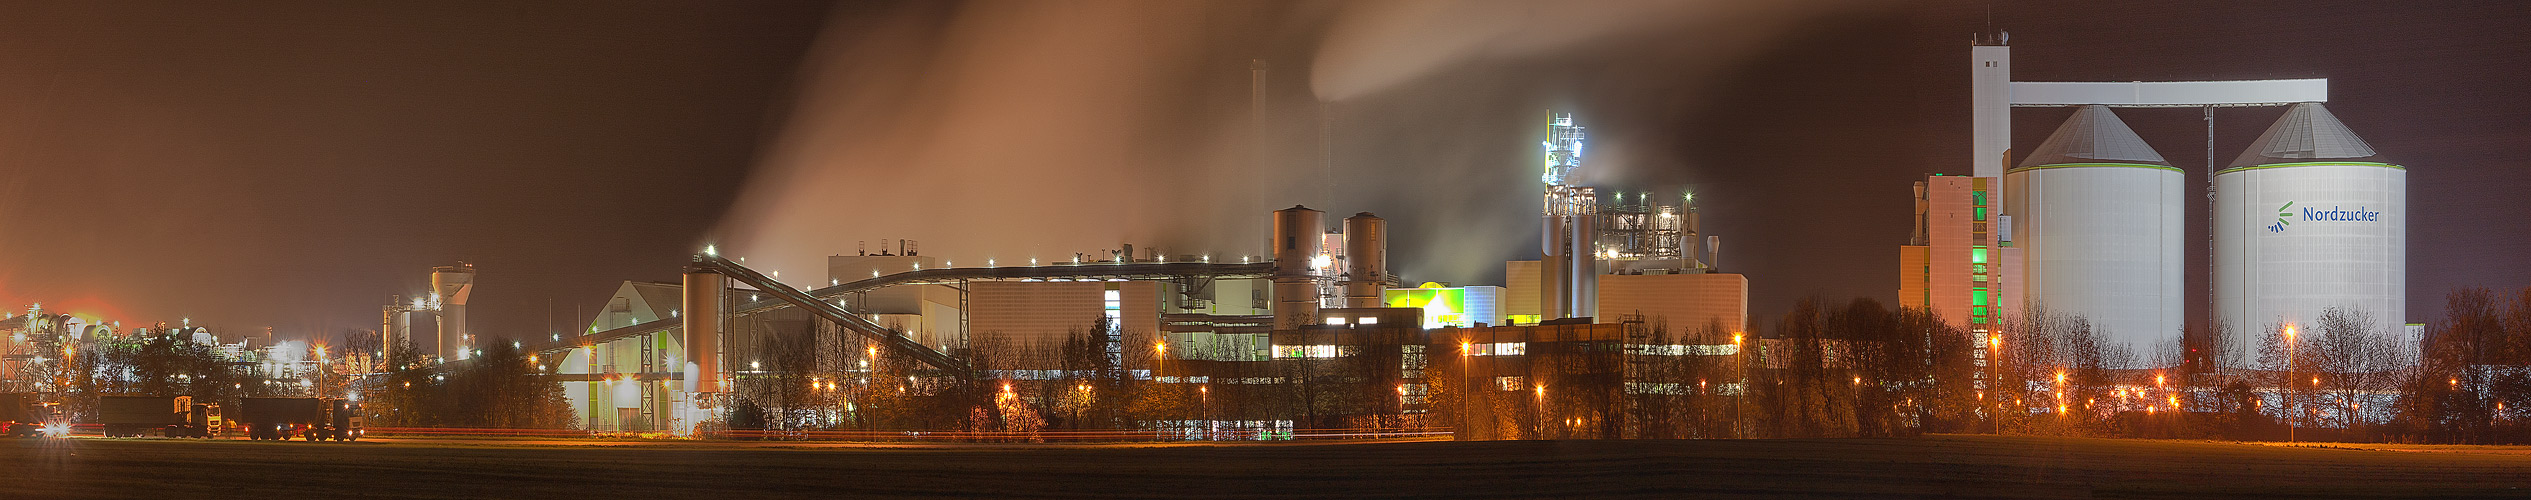 Zuckerfabrik Klein Wanzleben...